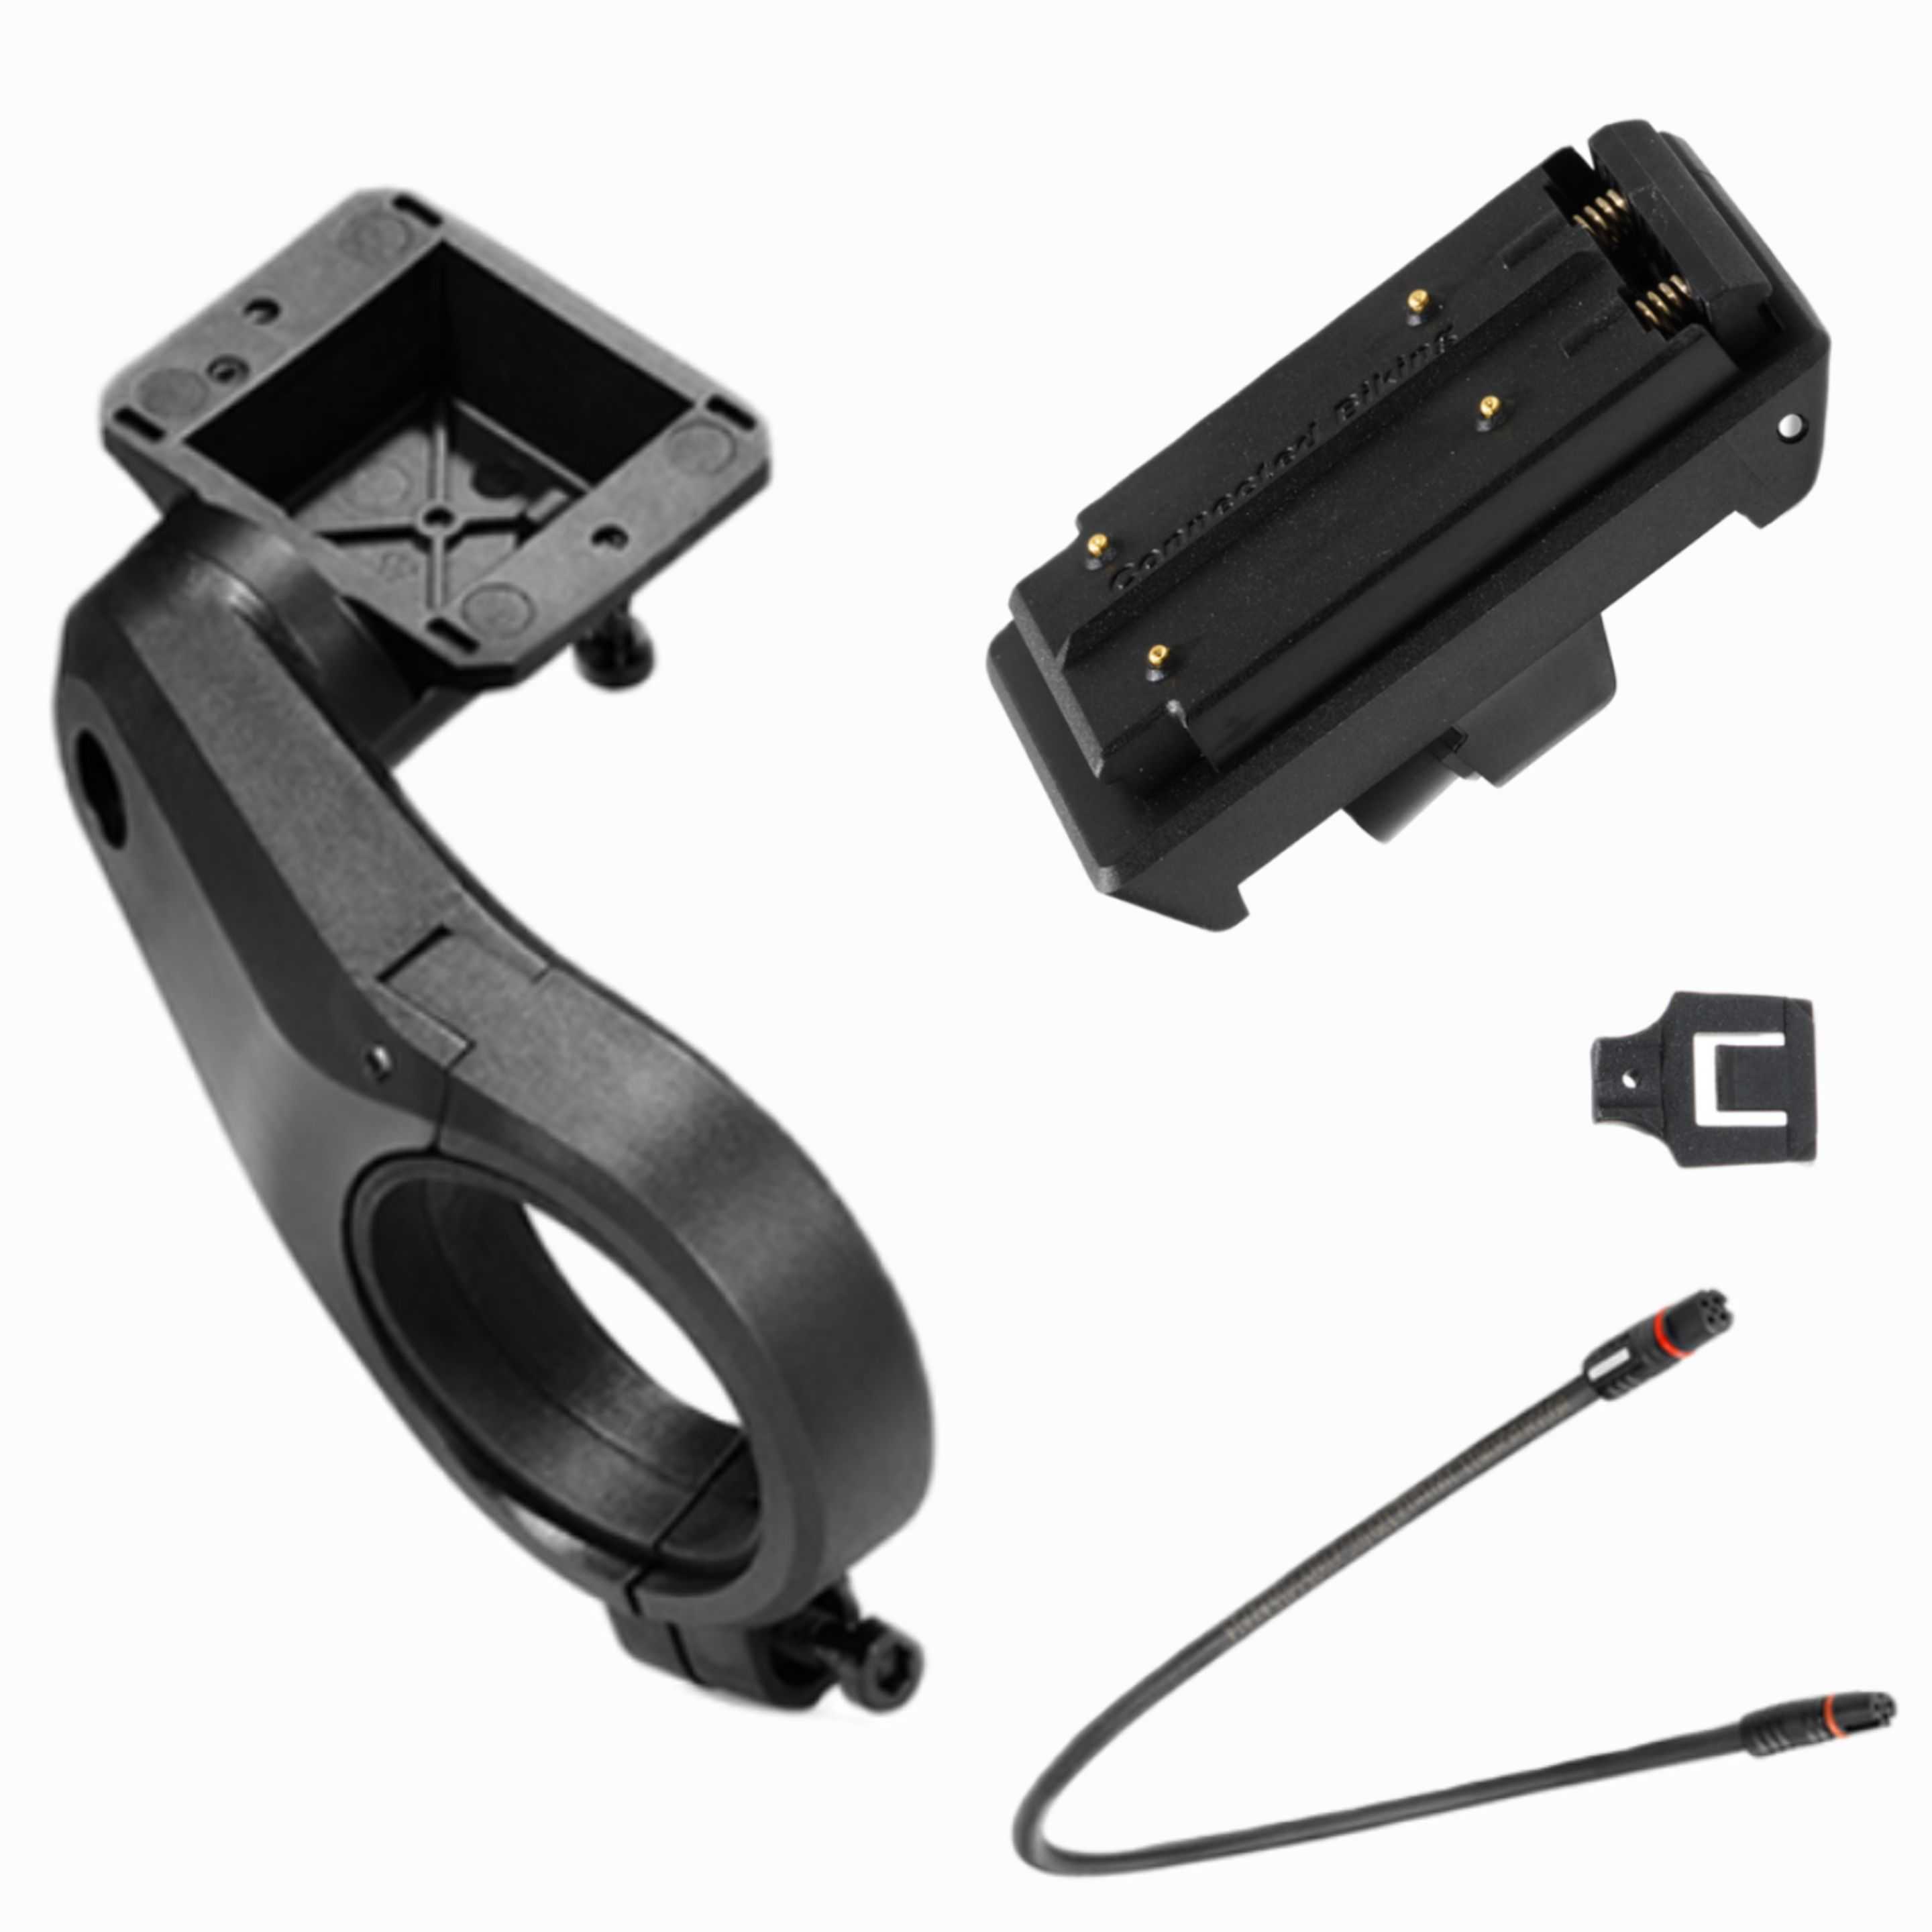 Bosch Nachrüst-Kit 1-Arm-Halter 35,0 mm (BDSYYYY) für Kiox 300, 500 und Smartphone Grip